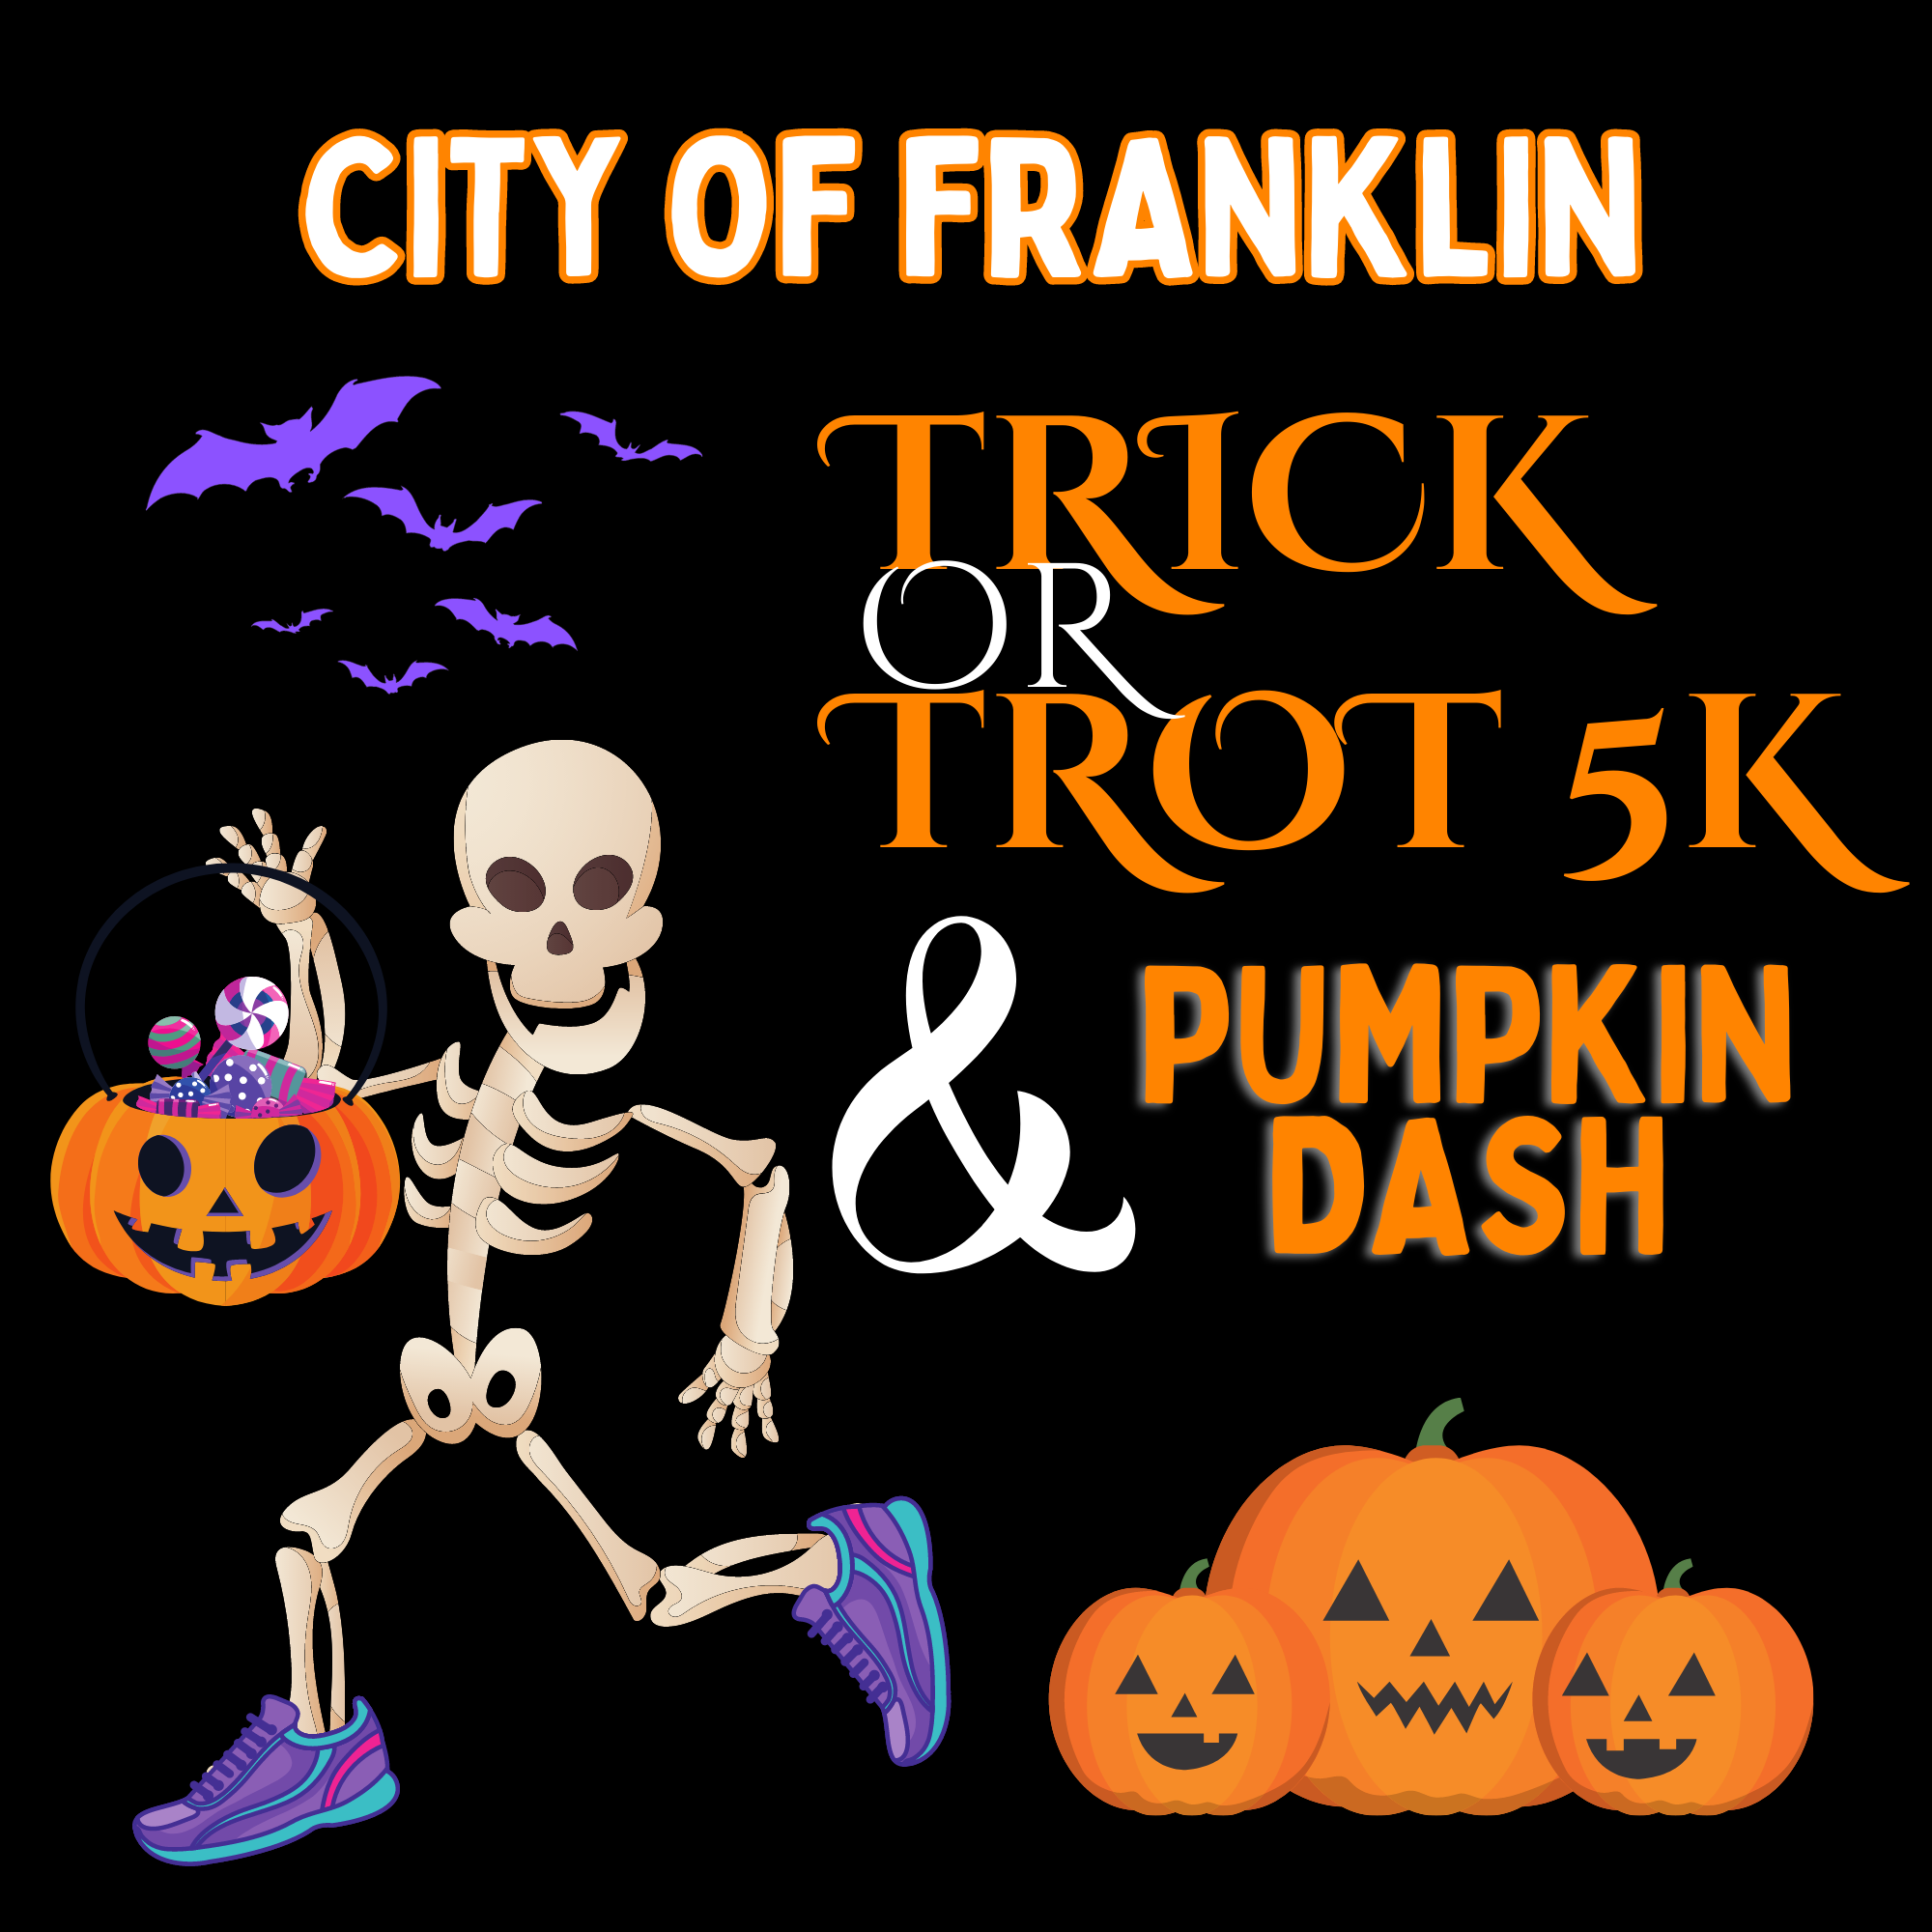 City of Franklin Trick or Trot 5K & Pumpkin Dash logo on RaceRaves